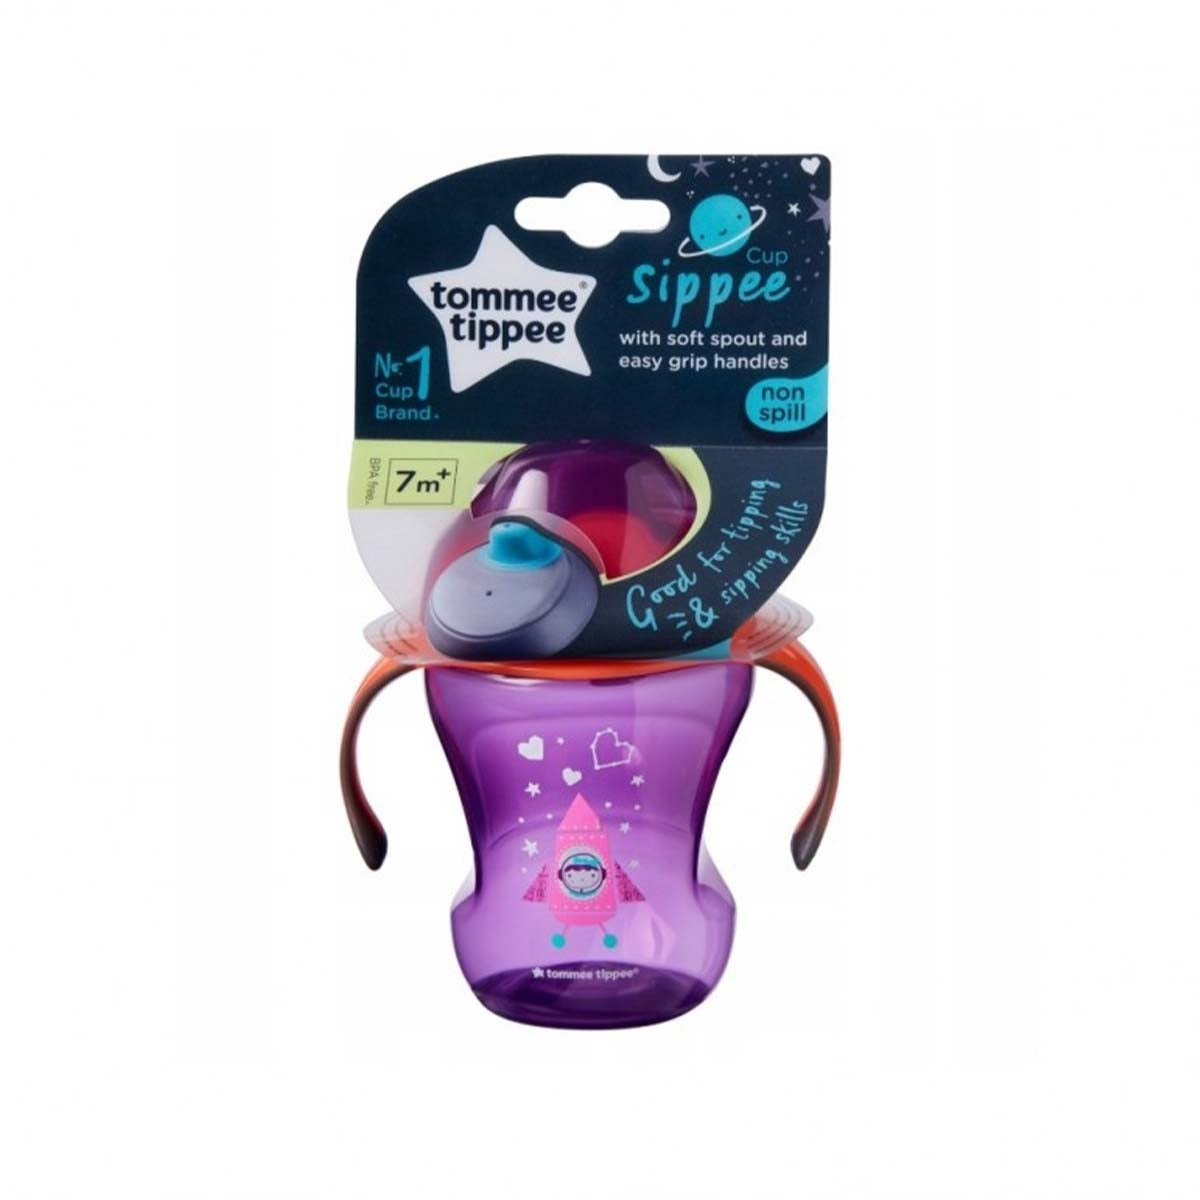 De Tommee Tippee tuitbeker purple 230 ml is een opvolgbeker die de overstap van fles/borst naar drinkbeker gemakkelijk maakt voor je baby. Met flexibele silicone tuit BPA-en lekvrij! Inhoud: 230 ml. Vanaf 7+M. VanZus.